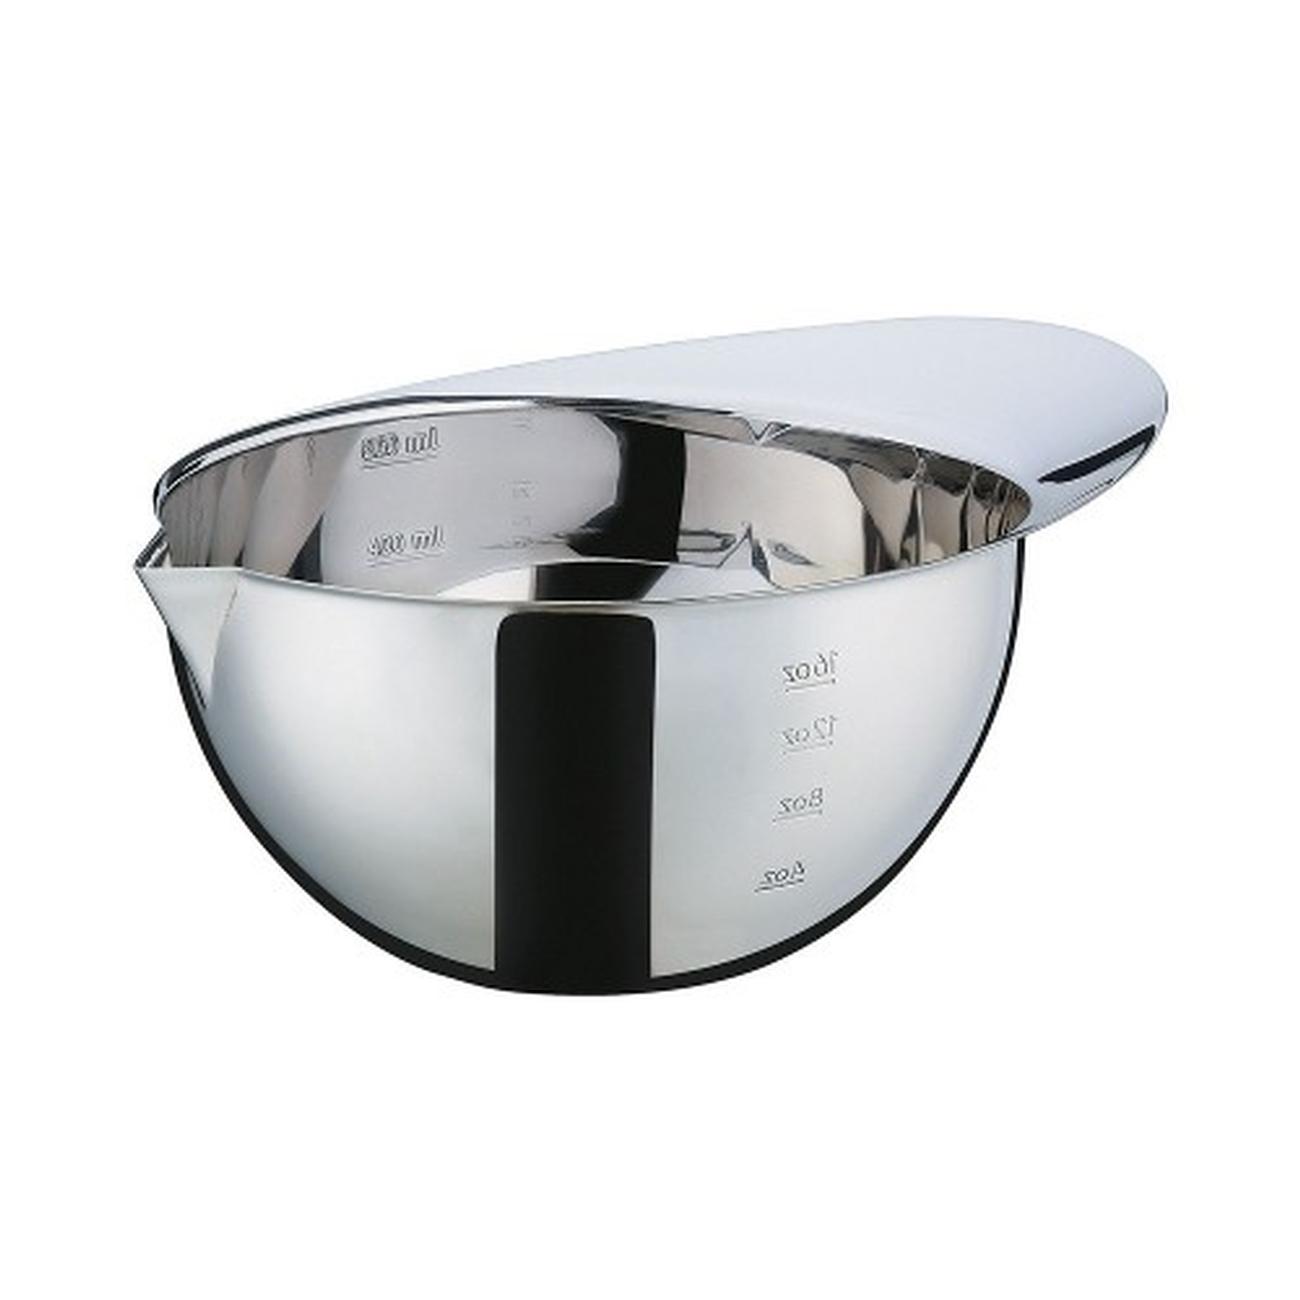 kuchenprofi-measuring-bowl-600ml - Kuchenprofi Measuring Bowl 600ml